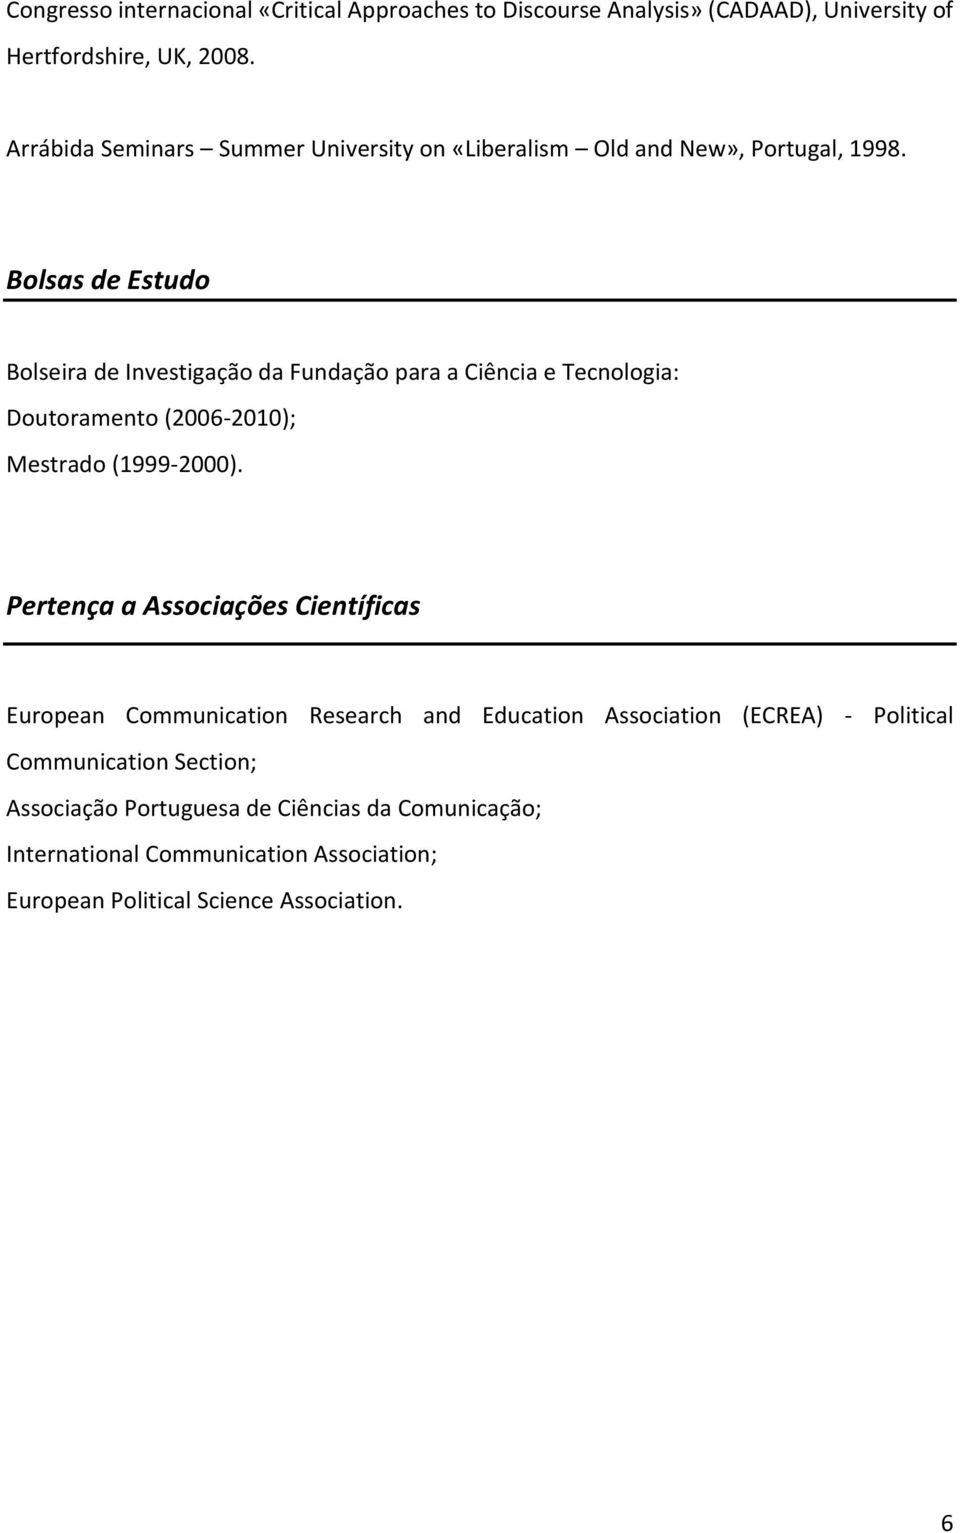 Bolsas de Estudo Bolseira de Investigação da Fundação para a Ciência e Tecnologia: Doutoramento (2006-2010); Mestrado (1999-2000).